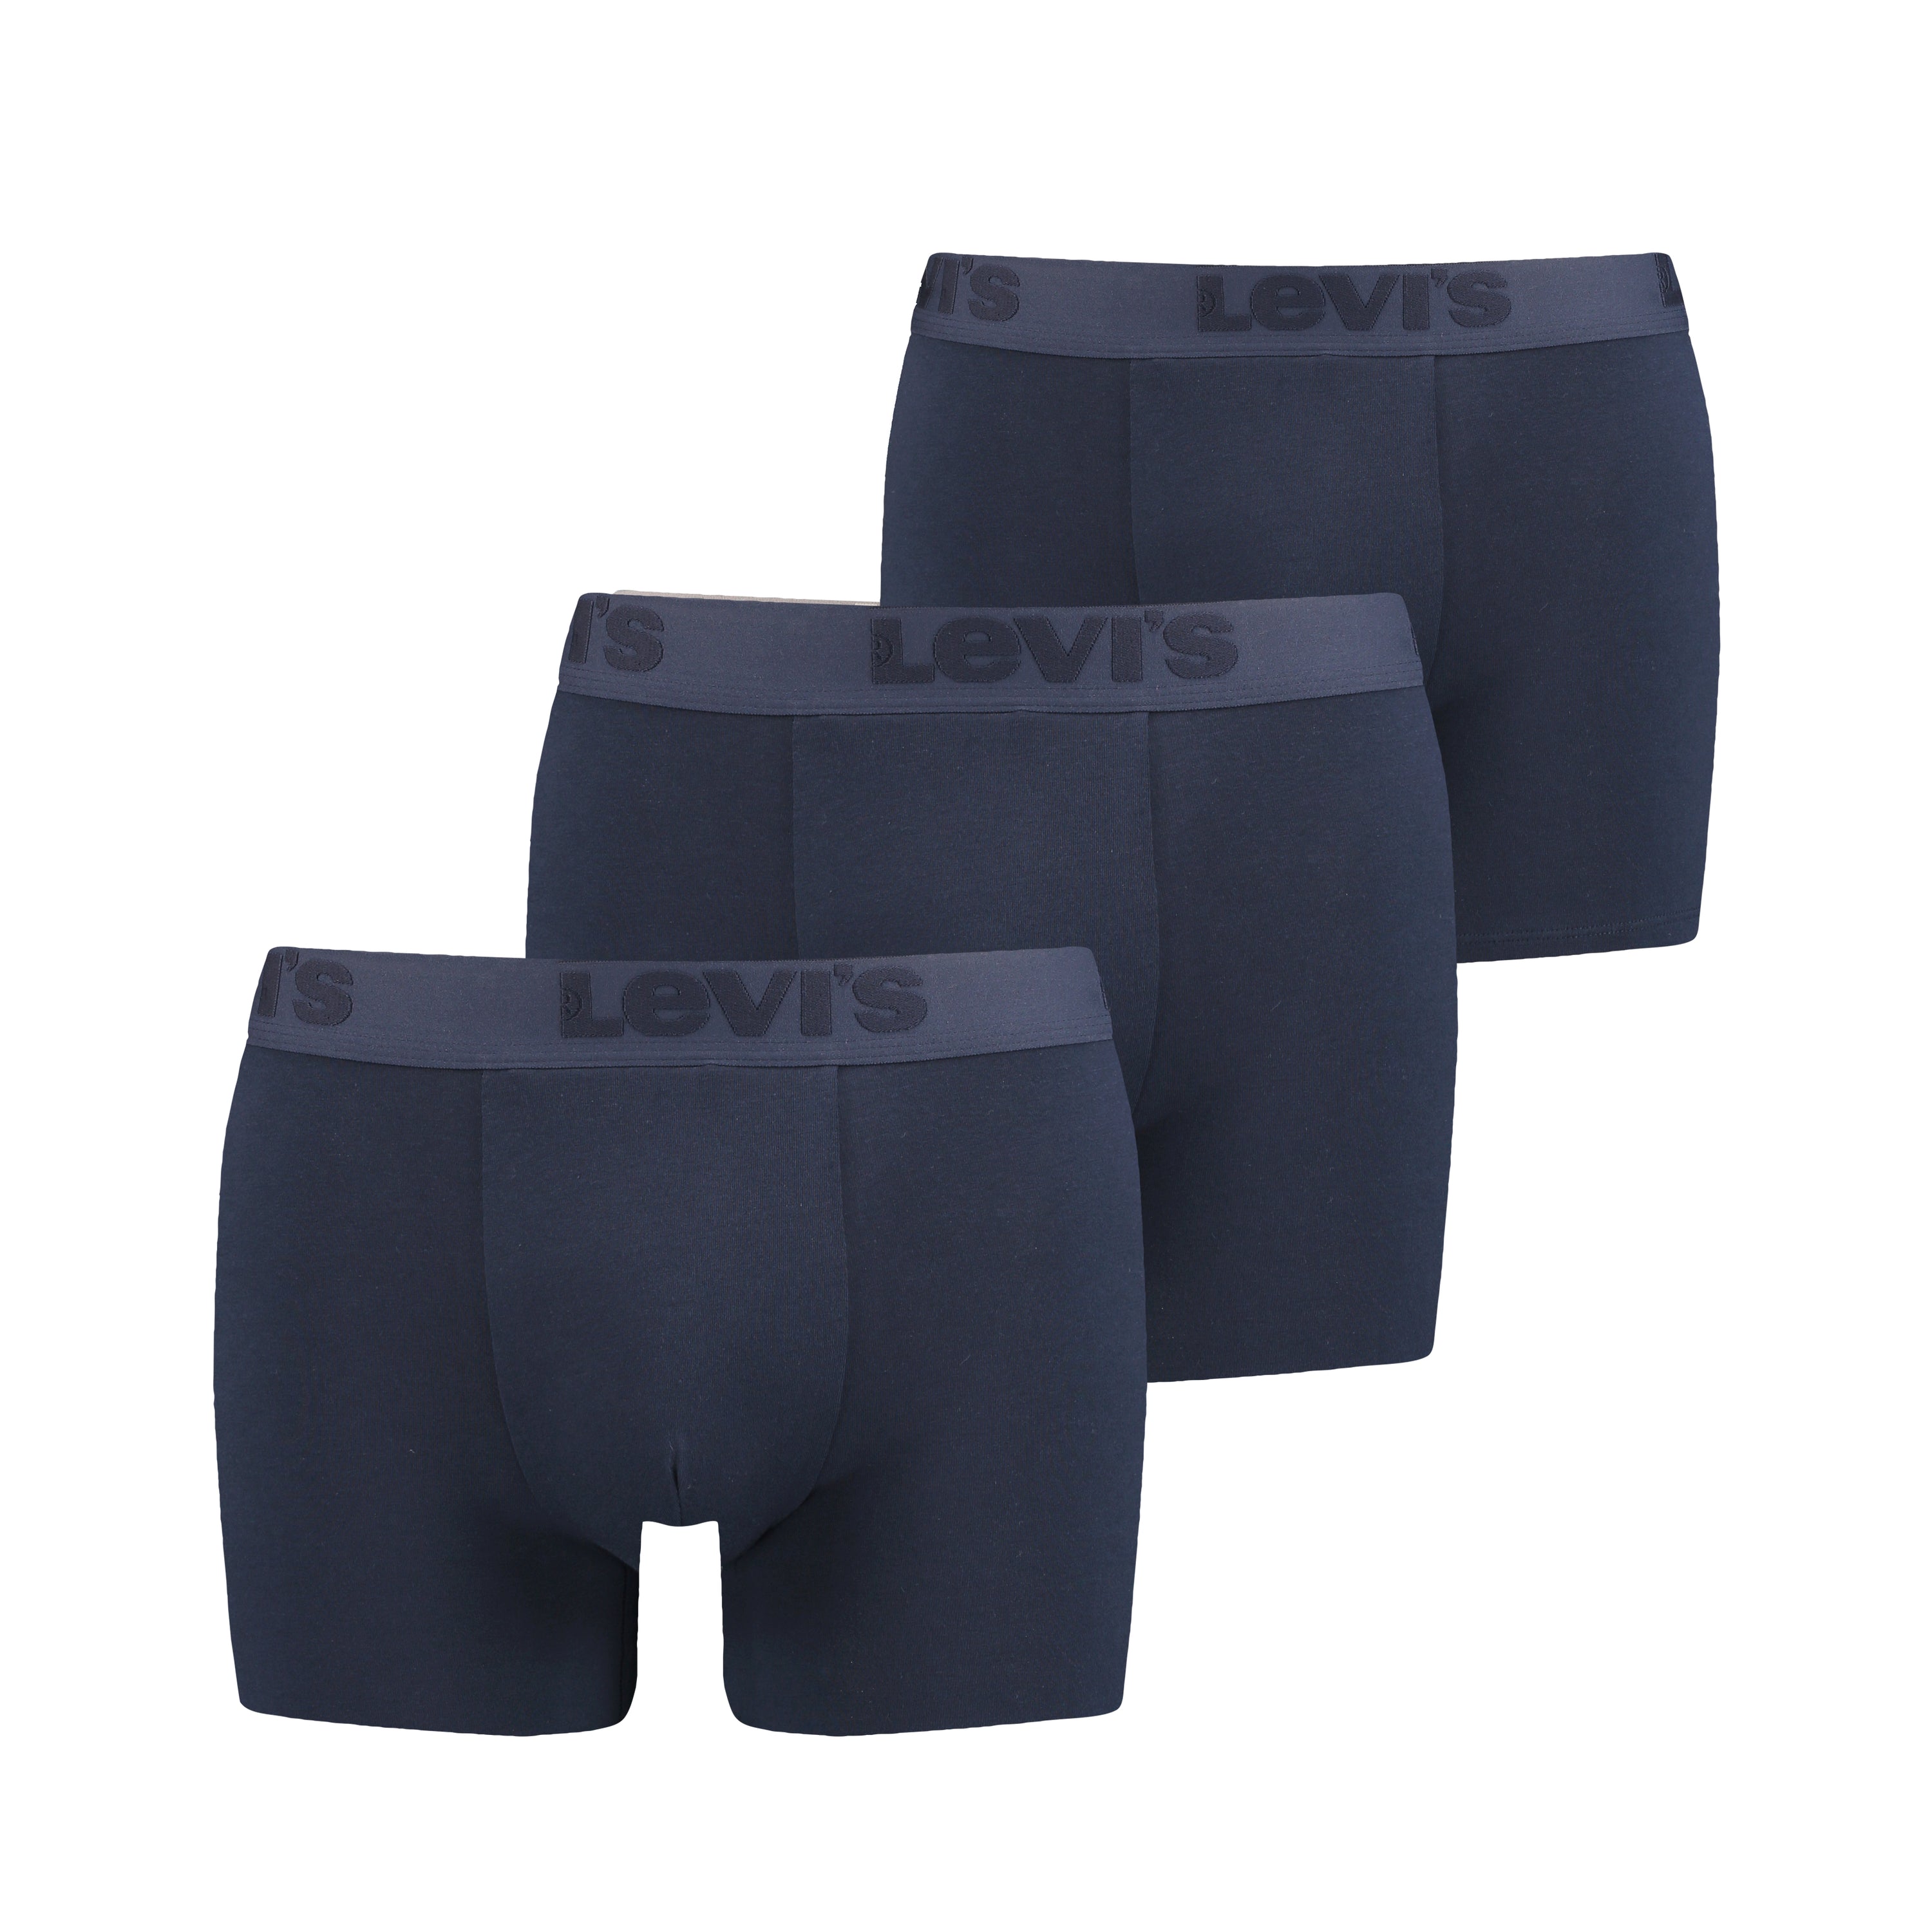 Levis Mens Underwear | Levis Underwear | McKenna Man Menswear